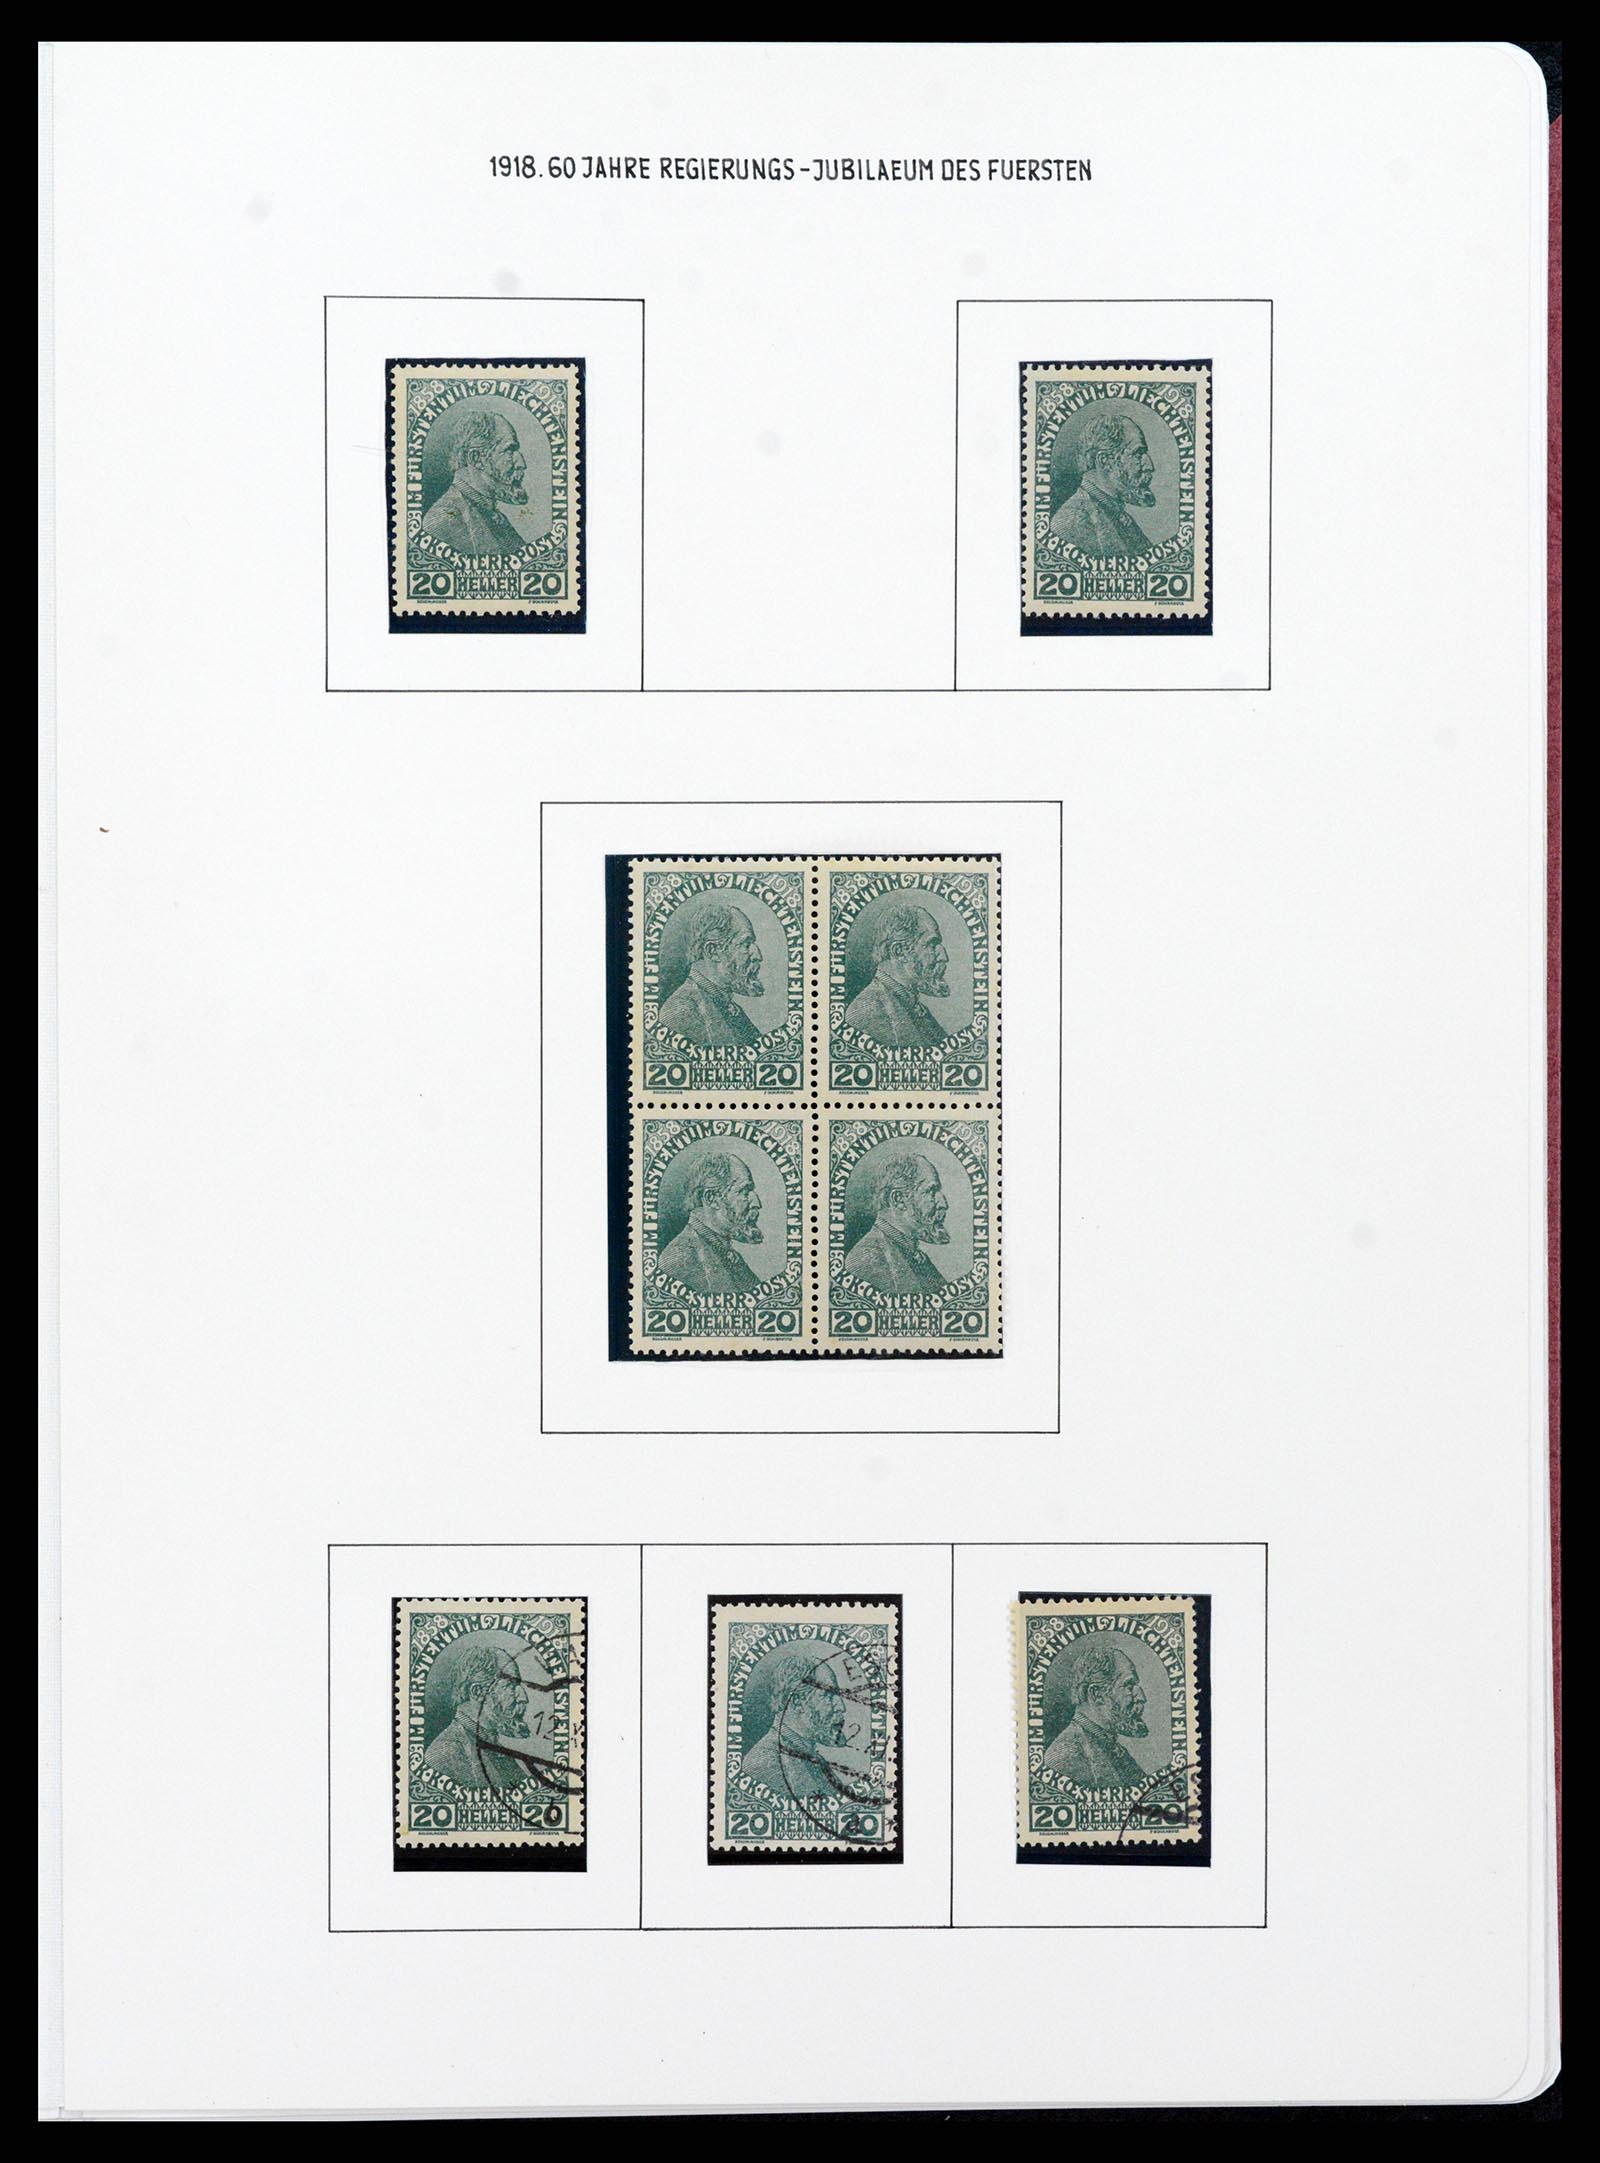 37150 0037 - Stamp collection 37150 Liechtenstein supercollection 1912-1962.